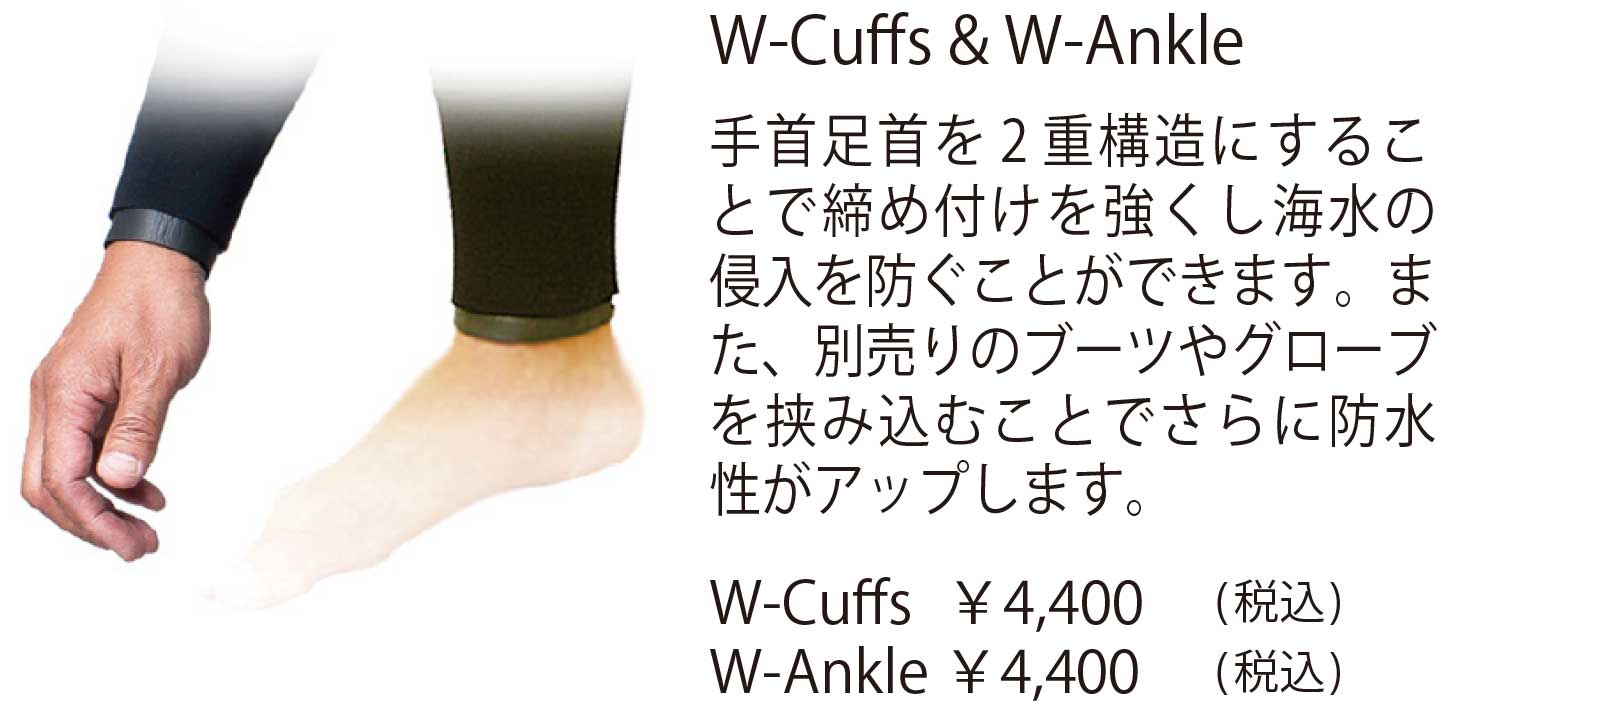 W-Cuffs & W-Ankle 手首足首を 2 重構造にするこ とで締め付けを強くし海水の 侵入を防ぐことができます。ま た、別売りのブーツやグローブ を挟み込むことでさらに防水 性がアップします。